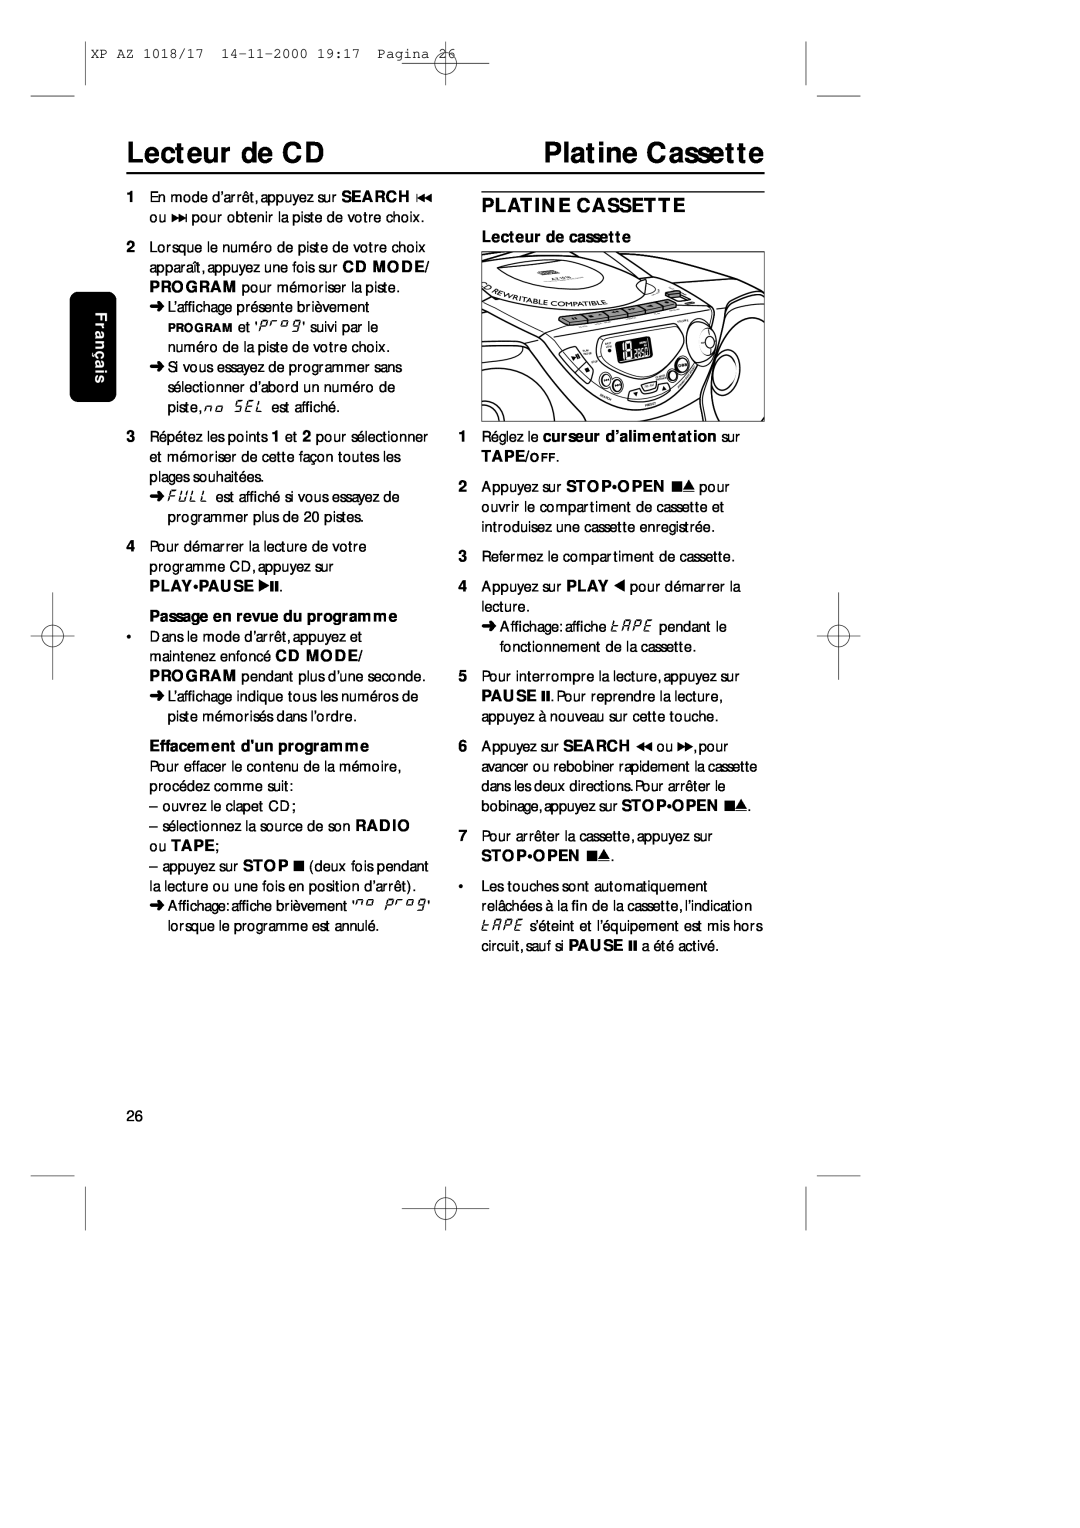 Philips 1018 manual Platine Cassette, Lecteur de CD, Français, Lecteur de cassette, Passage en revue du programme 